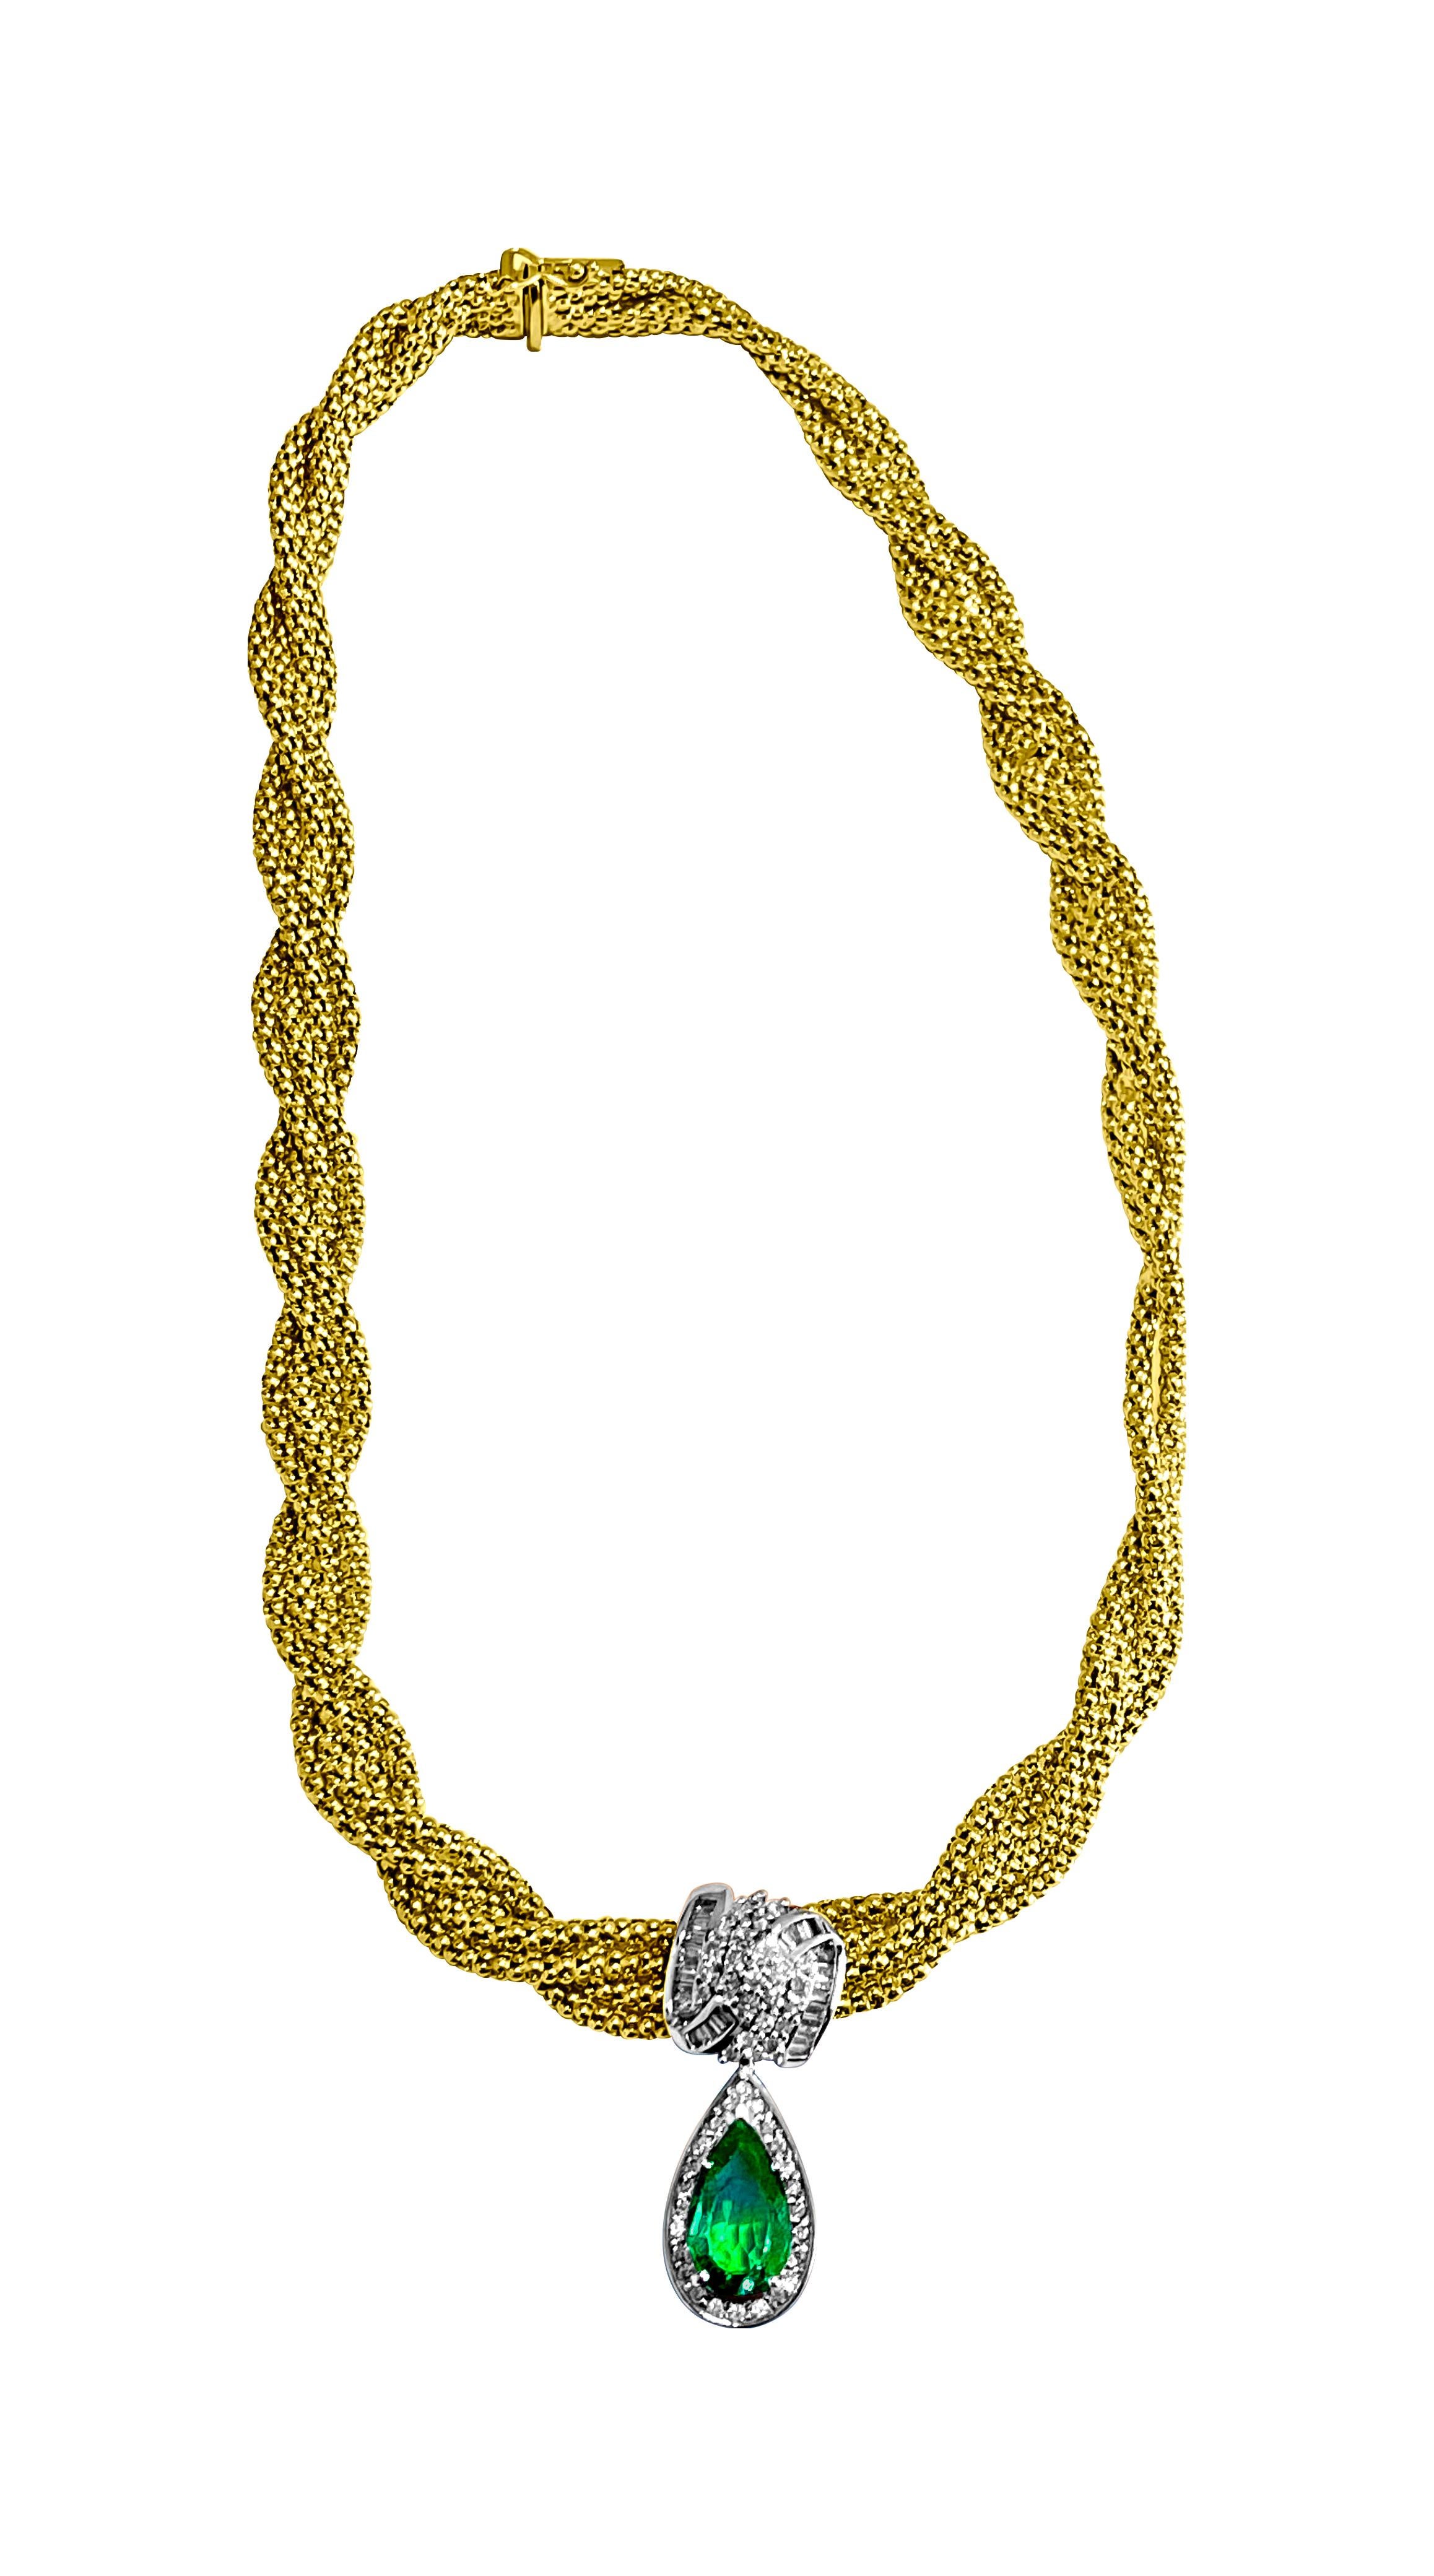 Diese aus luxuriösem 14-karätigem Gelbgold gefertigte Halskette besticht durch ihr Herzstück: einen 4,50 Karat schweren, birnenförmigen Smaragd aus Kolumbien, der für seinen leuchtend grünen Farbton bekannt ist. Umgeben ist dieser prächtige